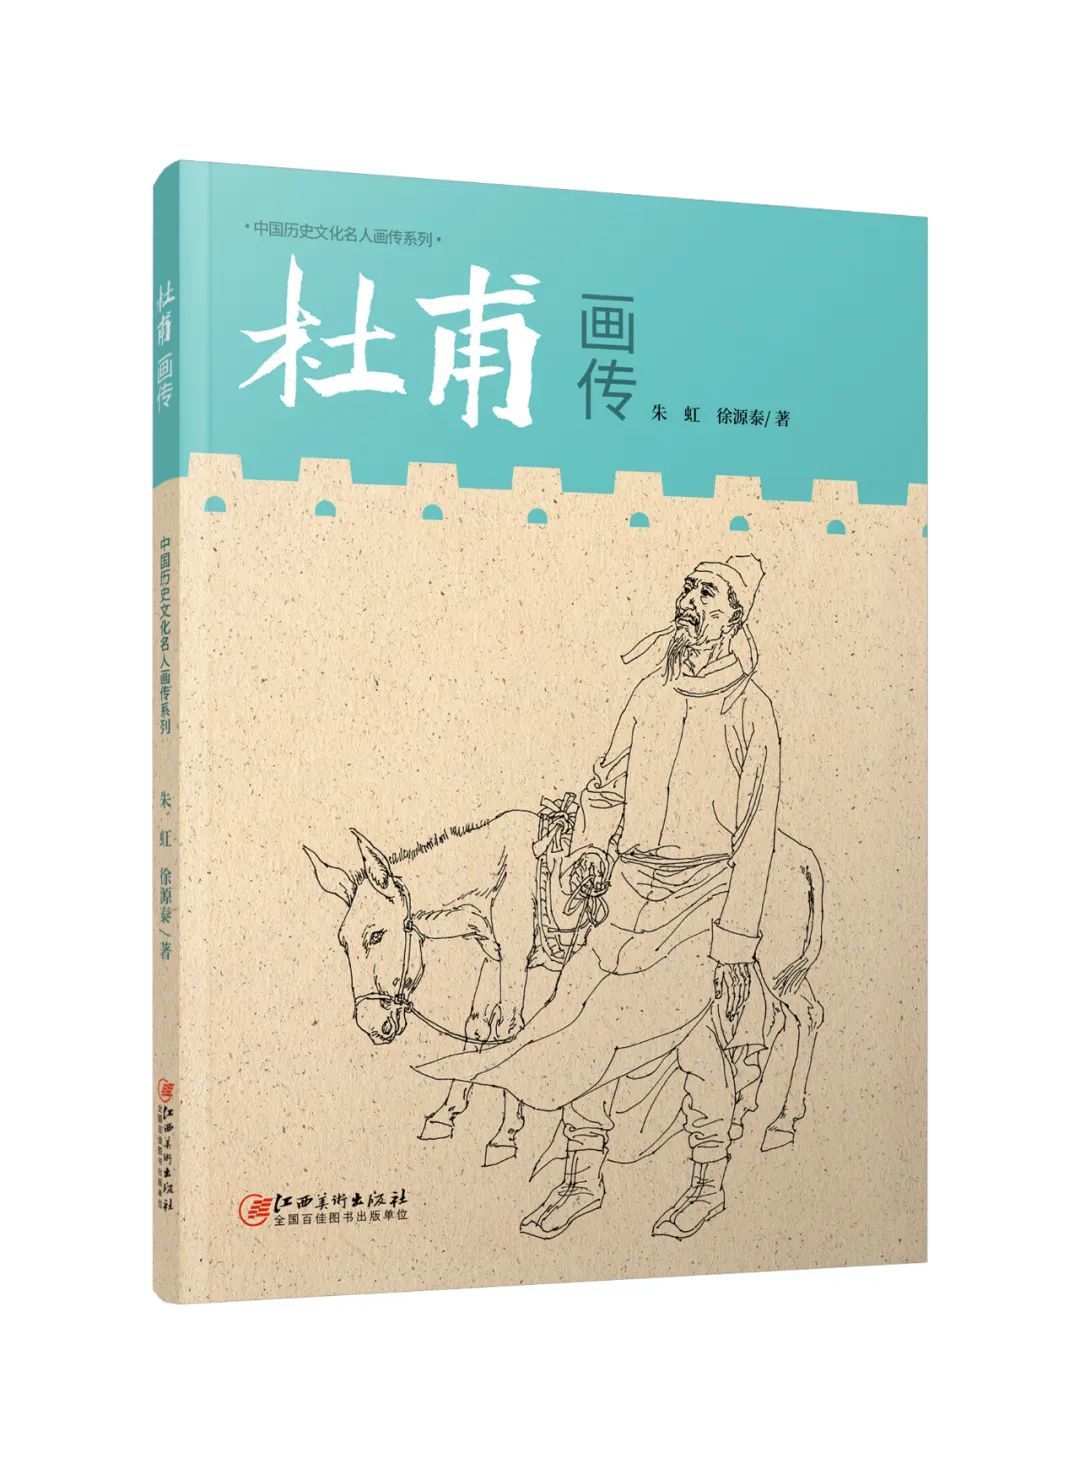 《杜甫画传》 朱虹 徐源泰著 江西美术出版社出版